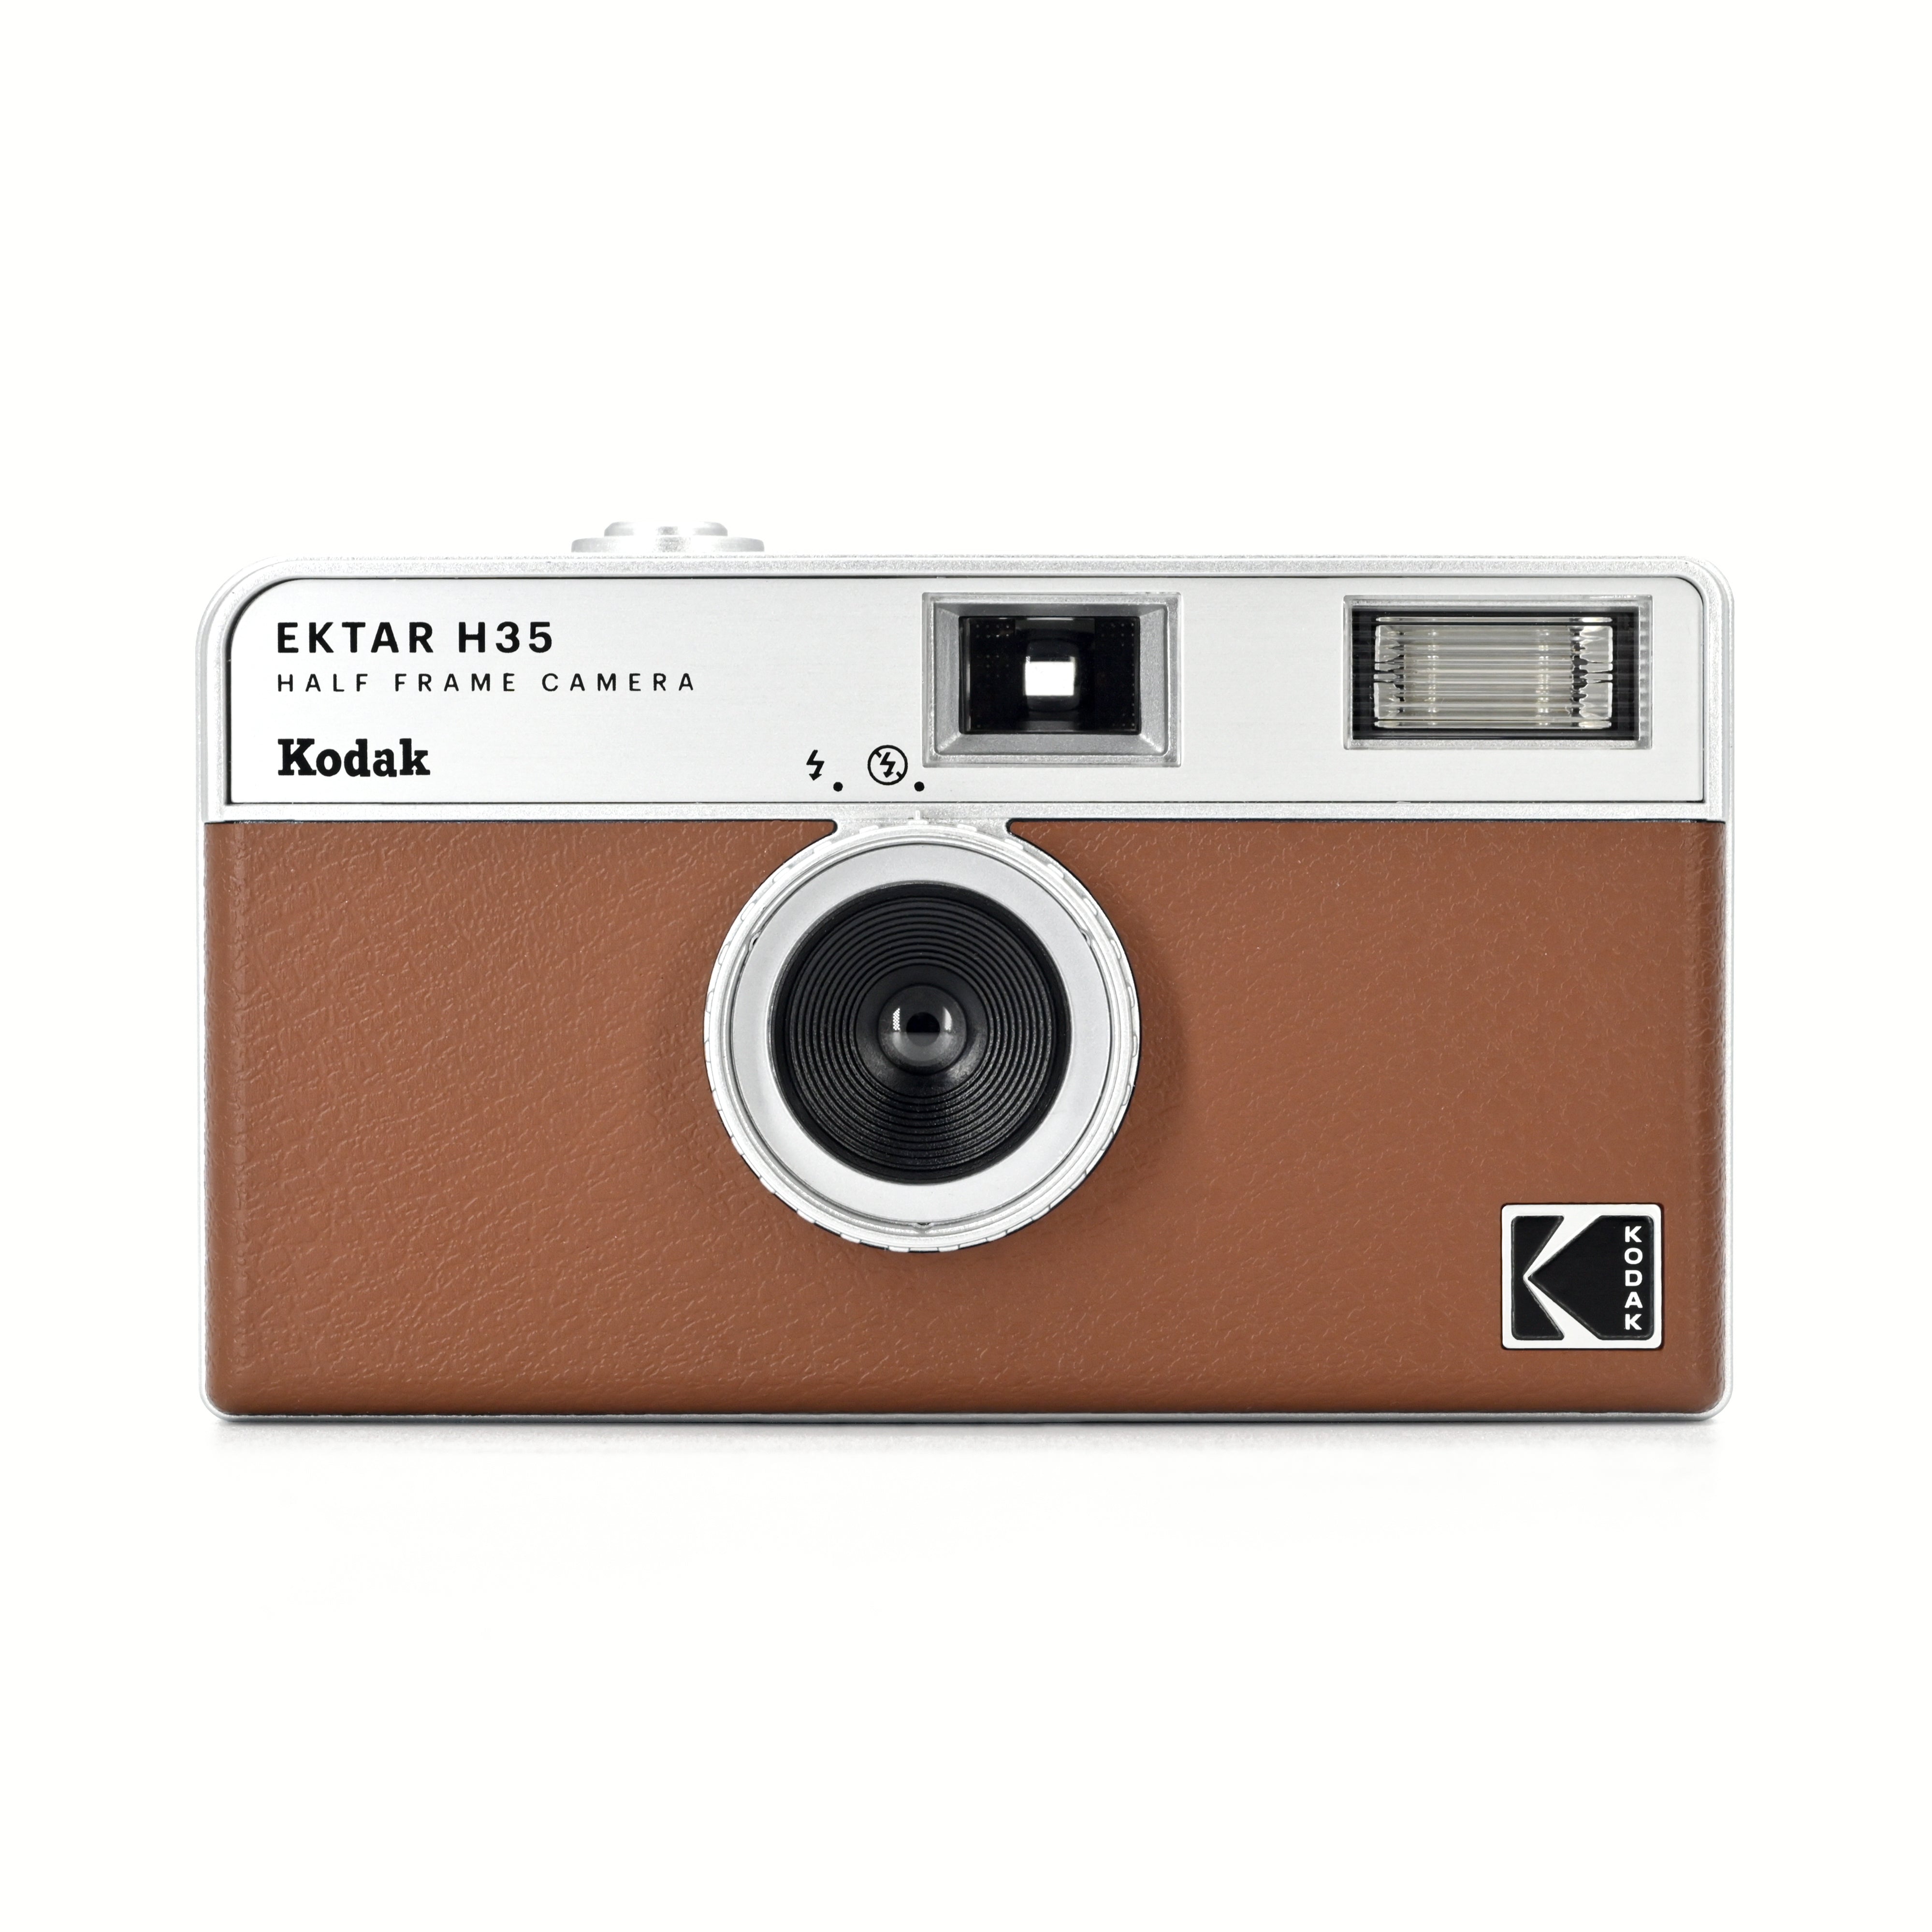 Kodak Ektar H35Half Frame Film Camera